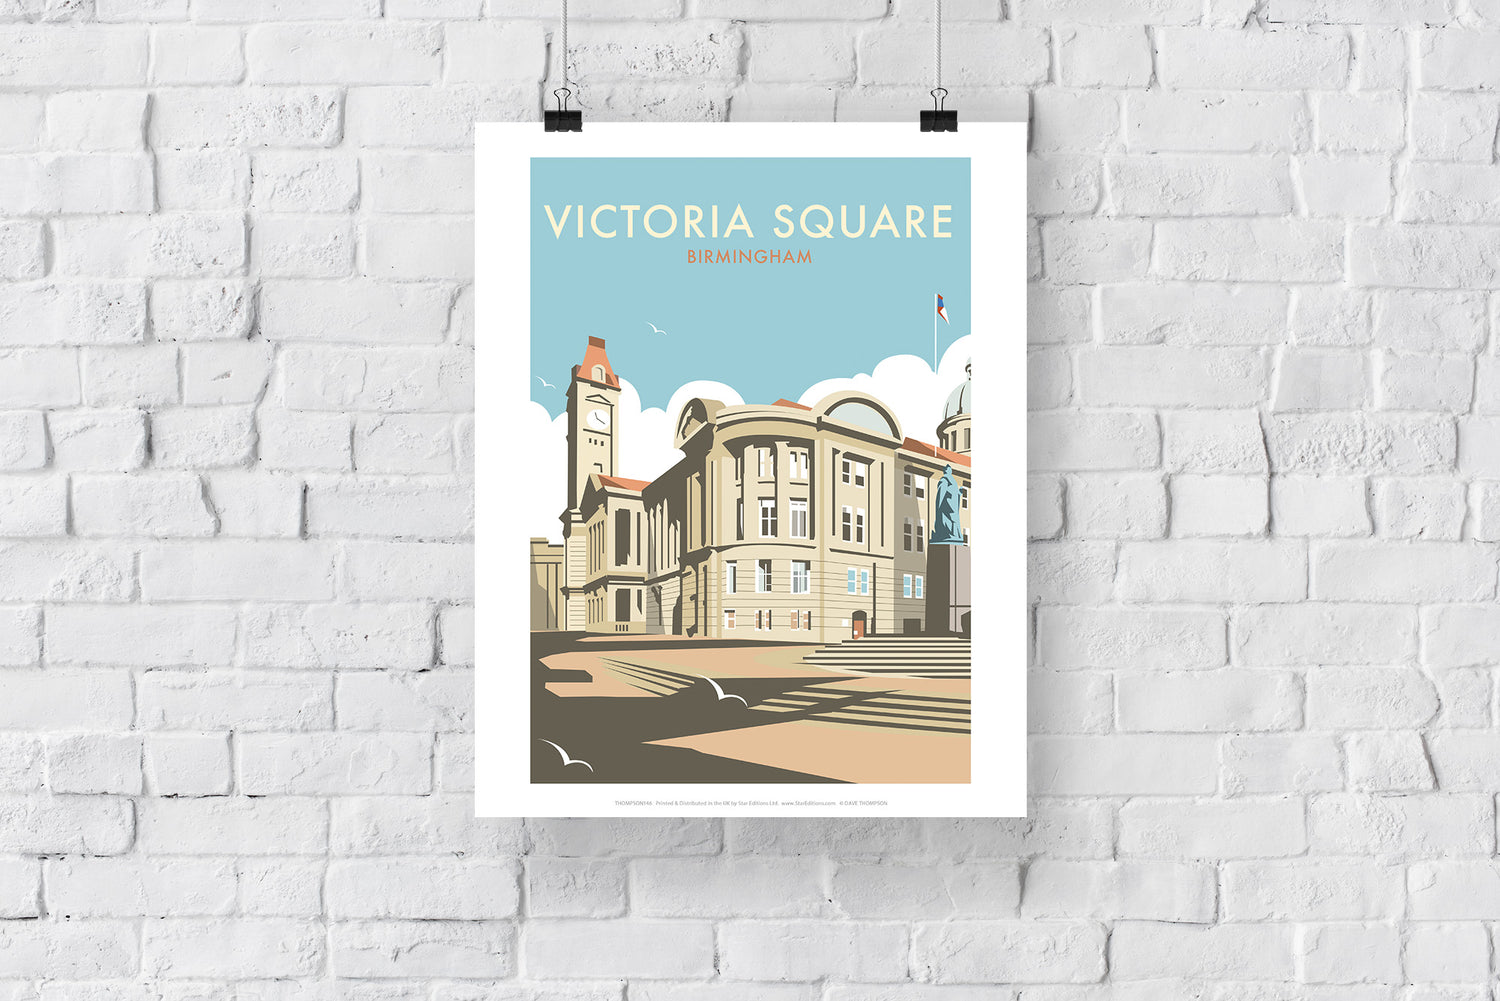 Victoria Square, Birmingham - Art Print